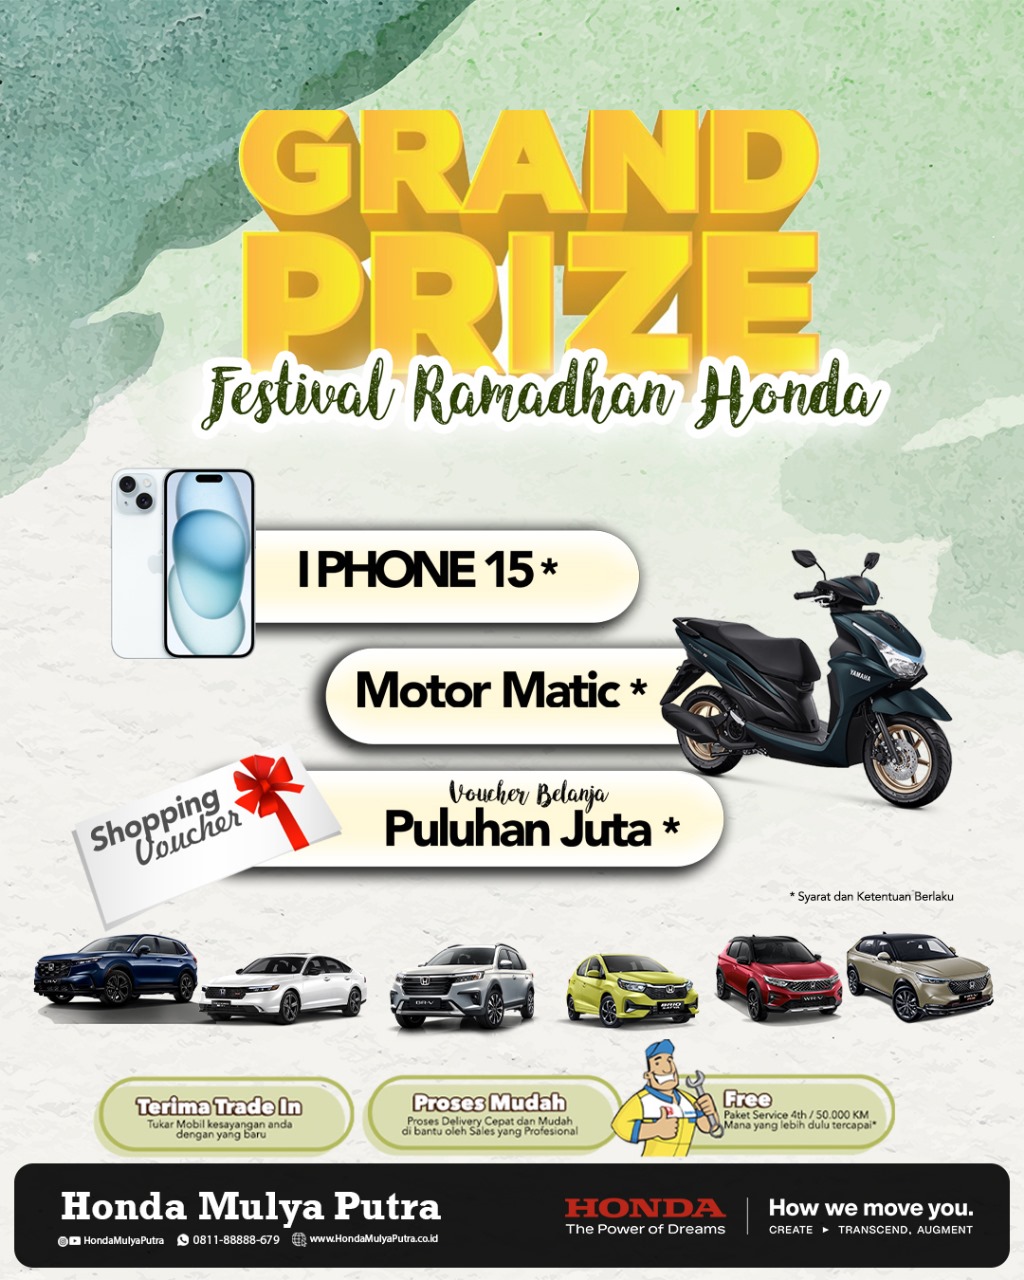 Tebus Kemeriahan di Festival Ramadhan Honda, Raih Grand Prize Berupa iPhone 15, Motor Matic, dan Voucher Belanja Puluhan Juta!